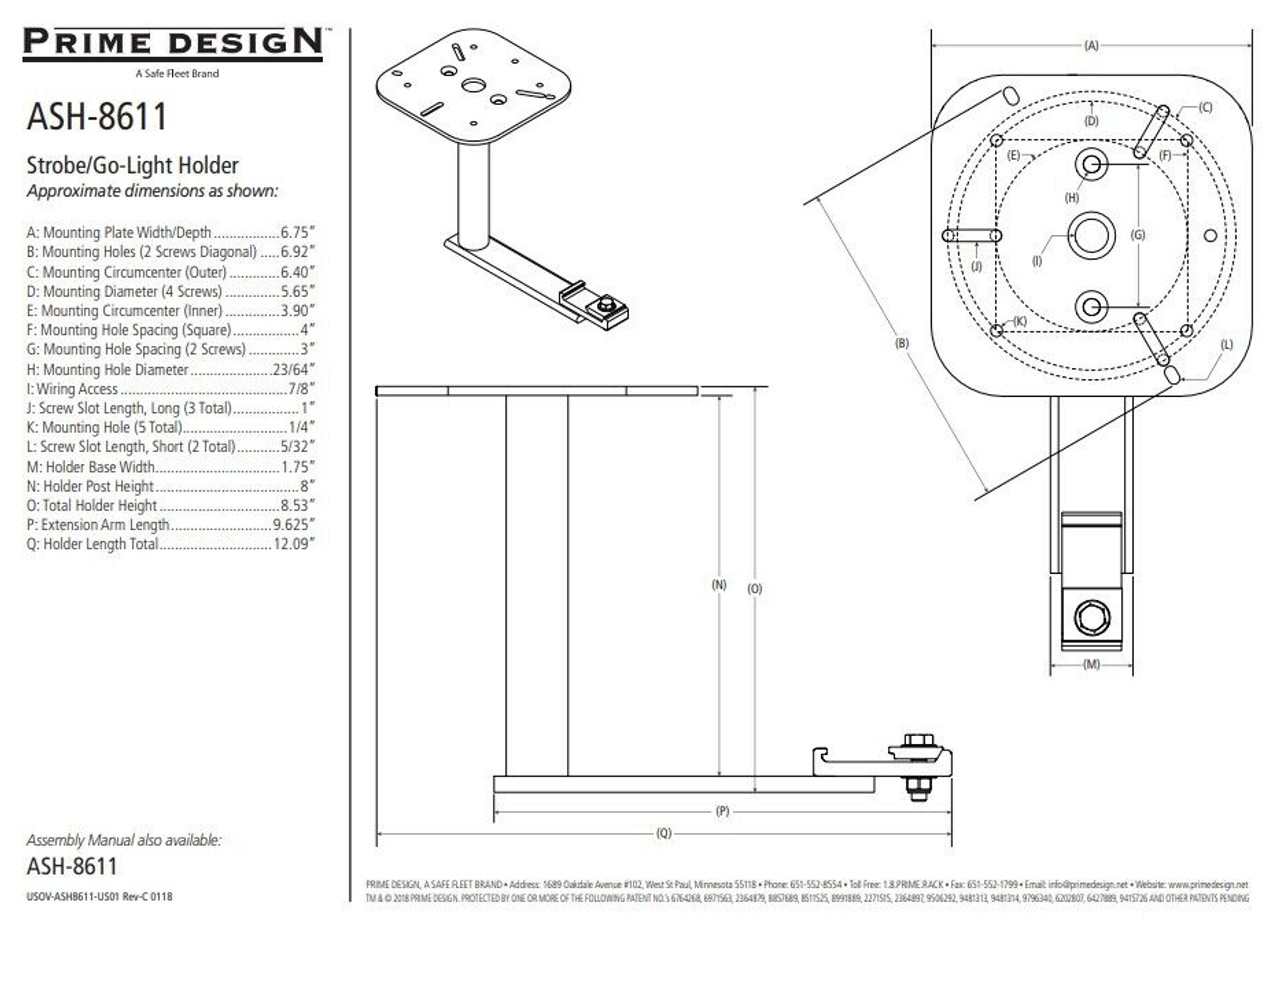 LadderProducts.com | Prime Design ASH-8611 Strobe & Go Light Holder Extension Arm 8 IN